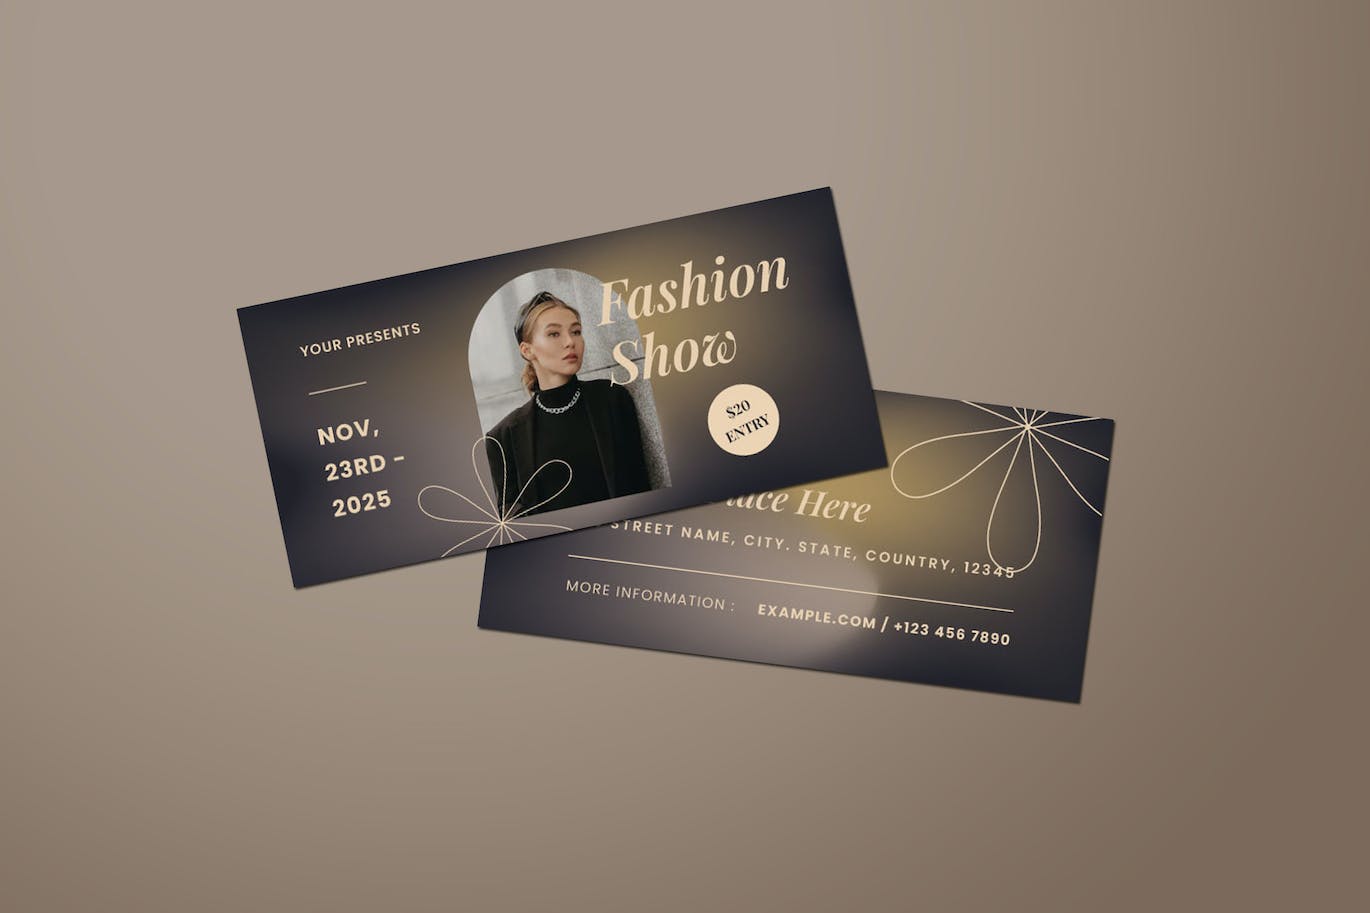 时装秀DL传单设计模板 Fashion Show DL Flyer 设计素材 第1张